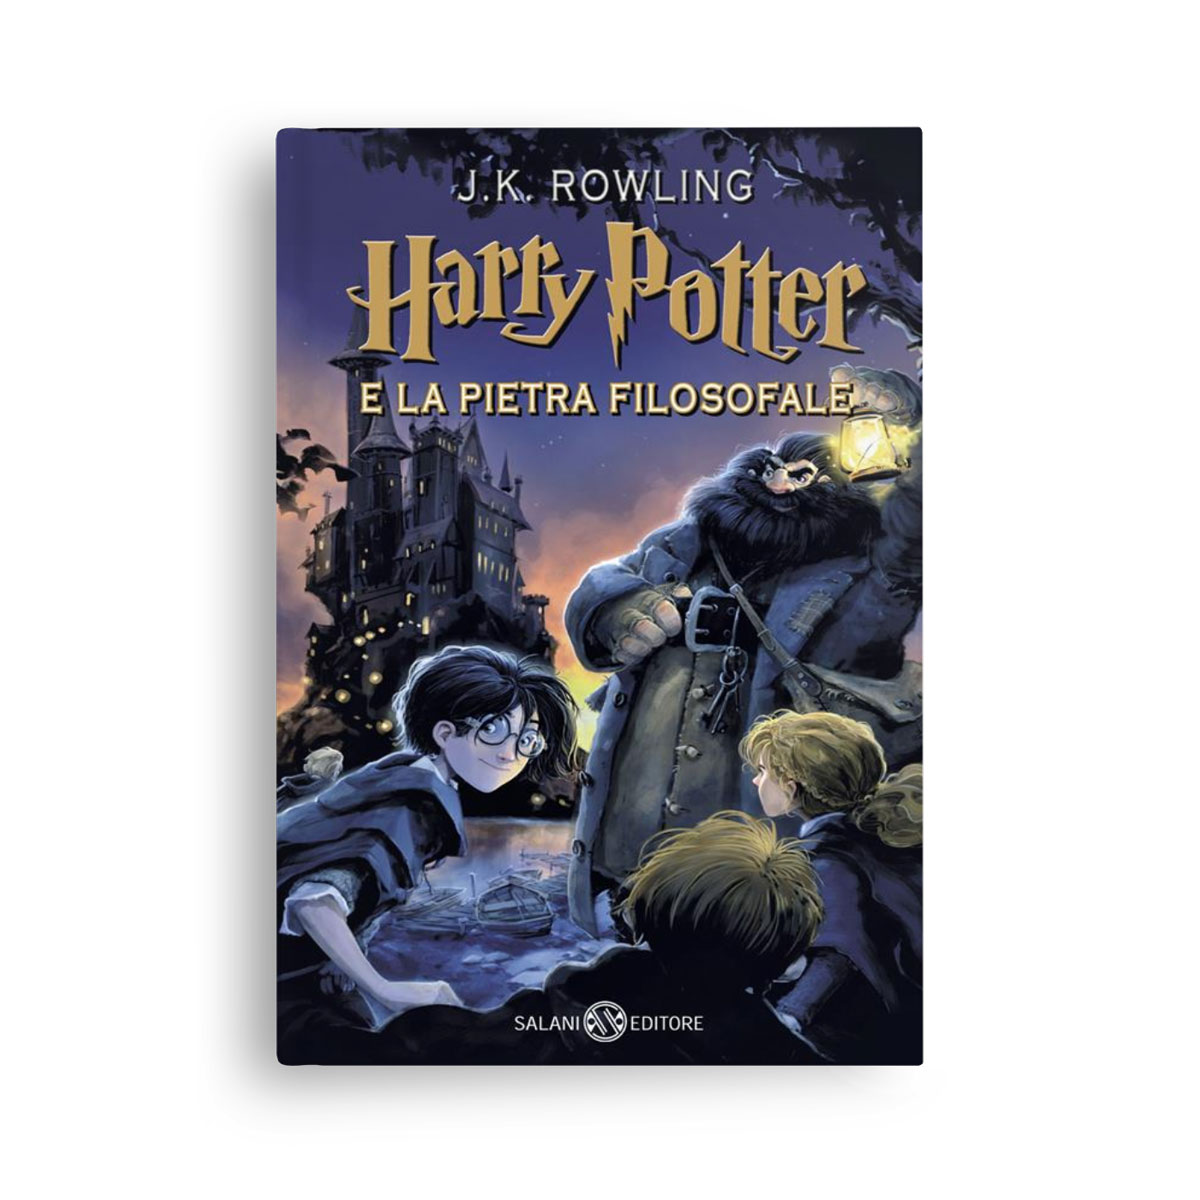 https://italiano-bello.com/wp-content/uploads/2021/11/Harry-Potter-e-la-pietra-filosofale.jpg